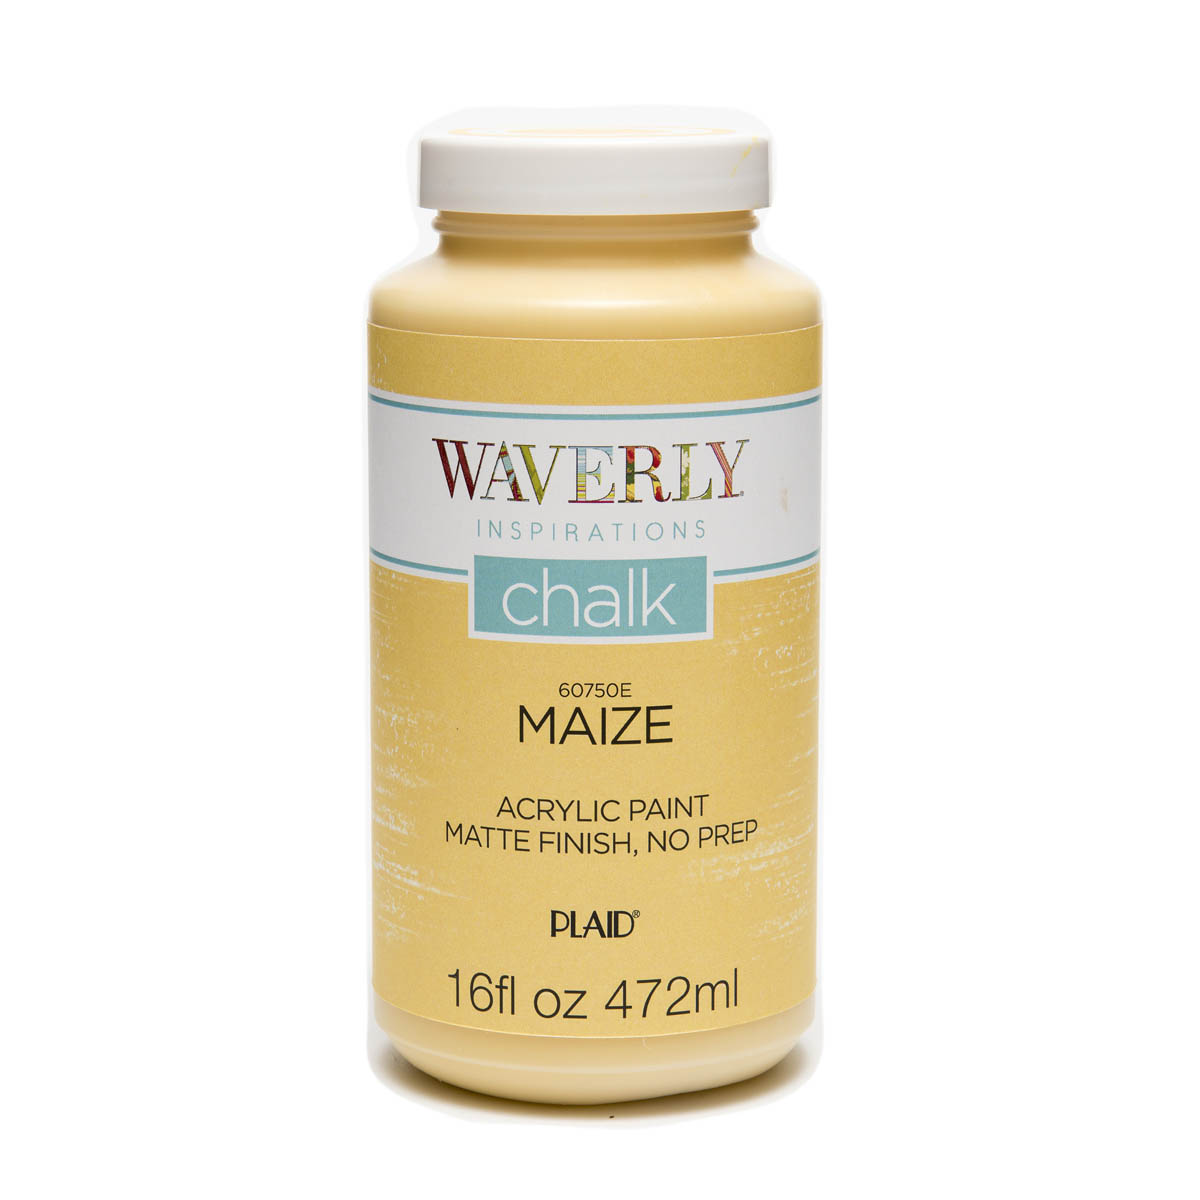 Waverly ® Inspirations Chalk Finish Acrylic Paint - Maize, 16 oz. - 60750E